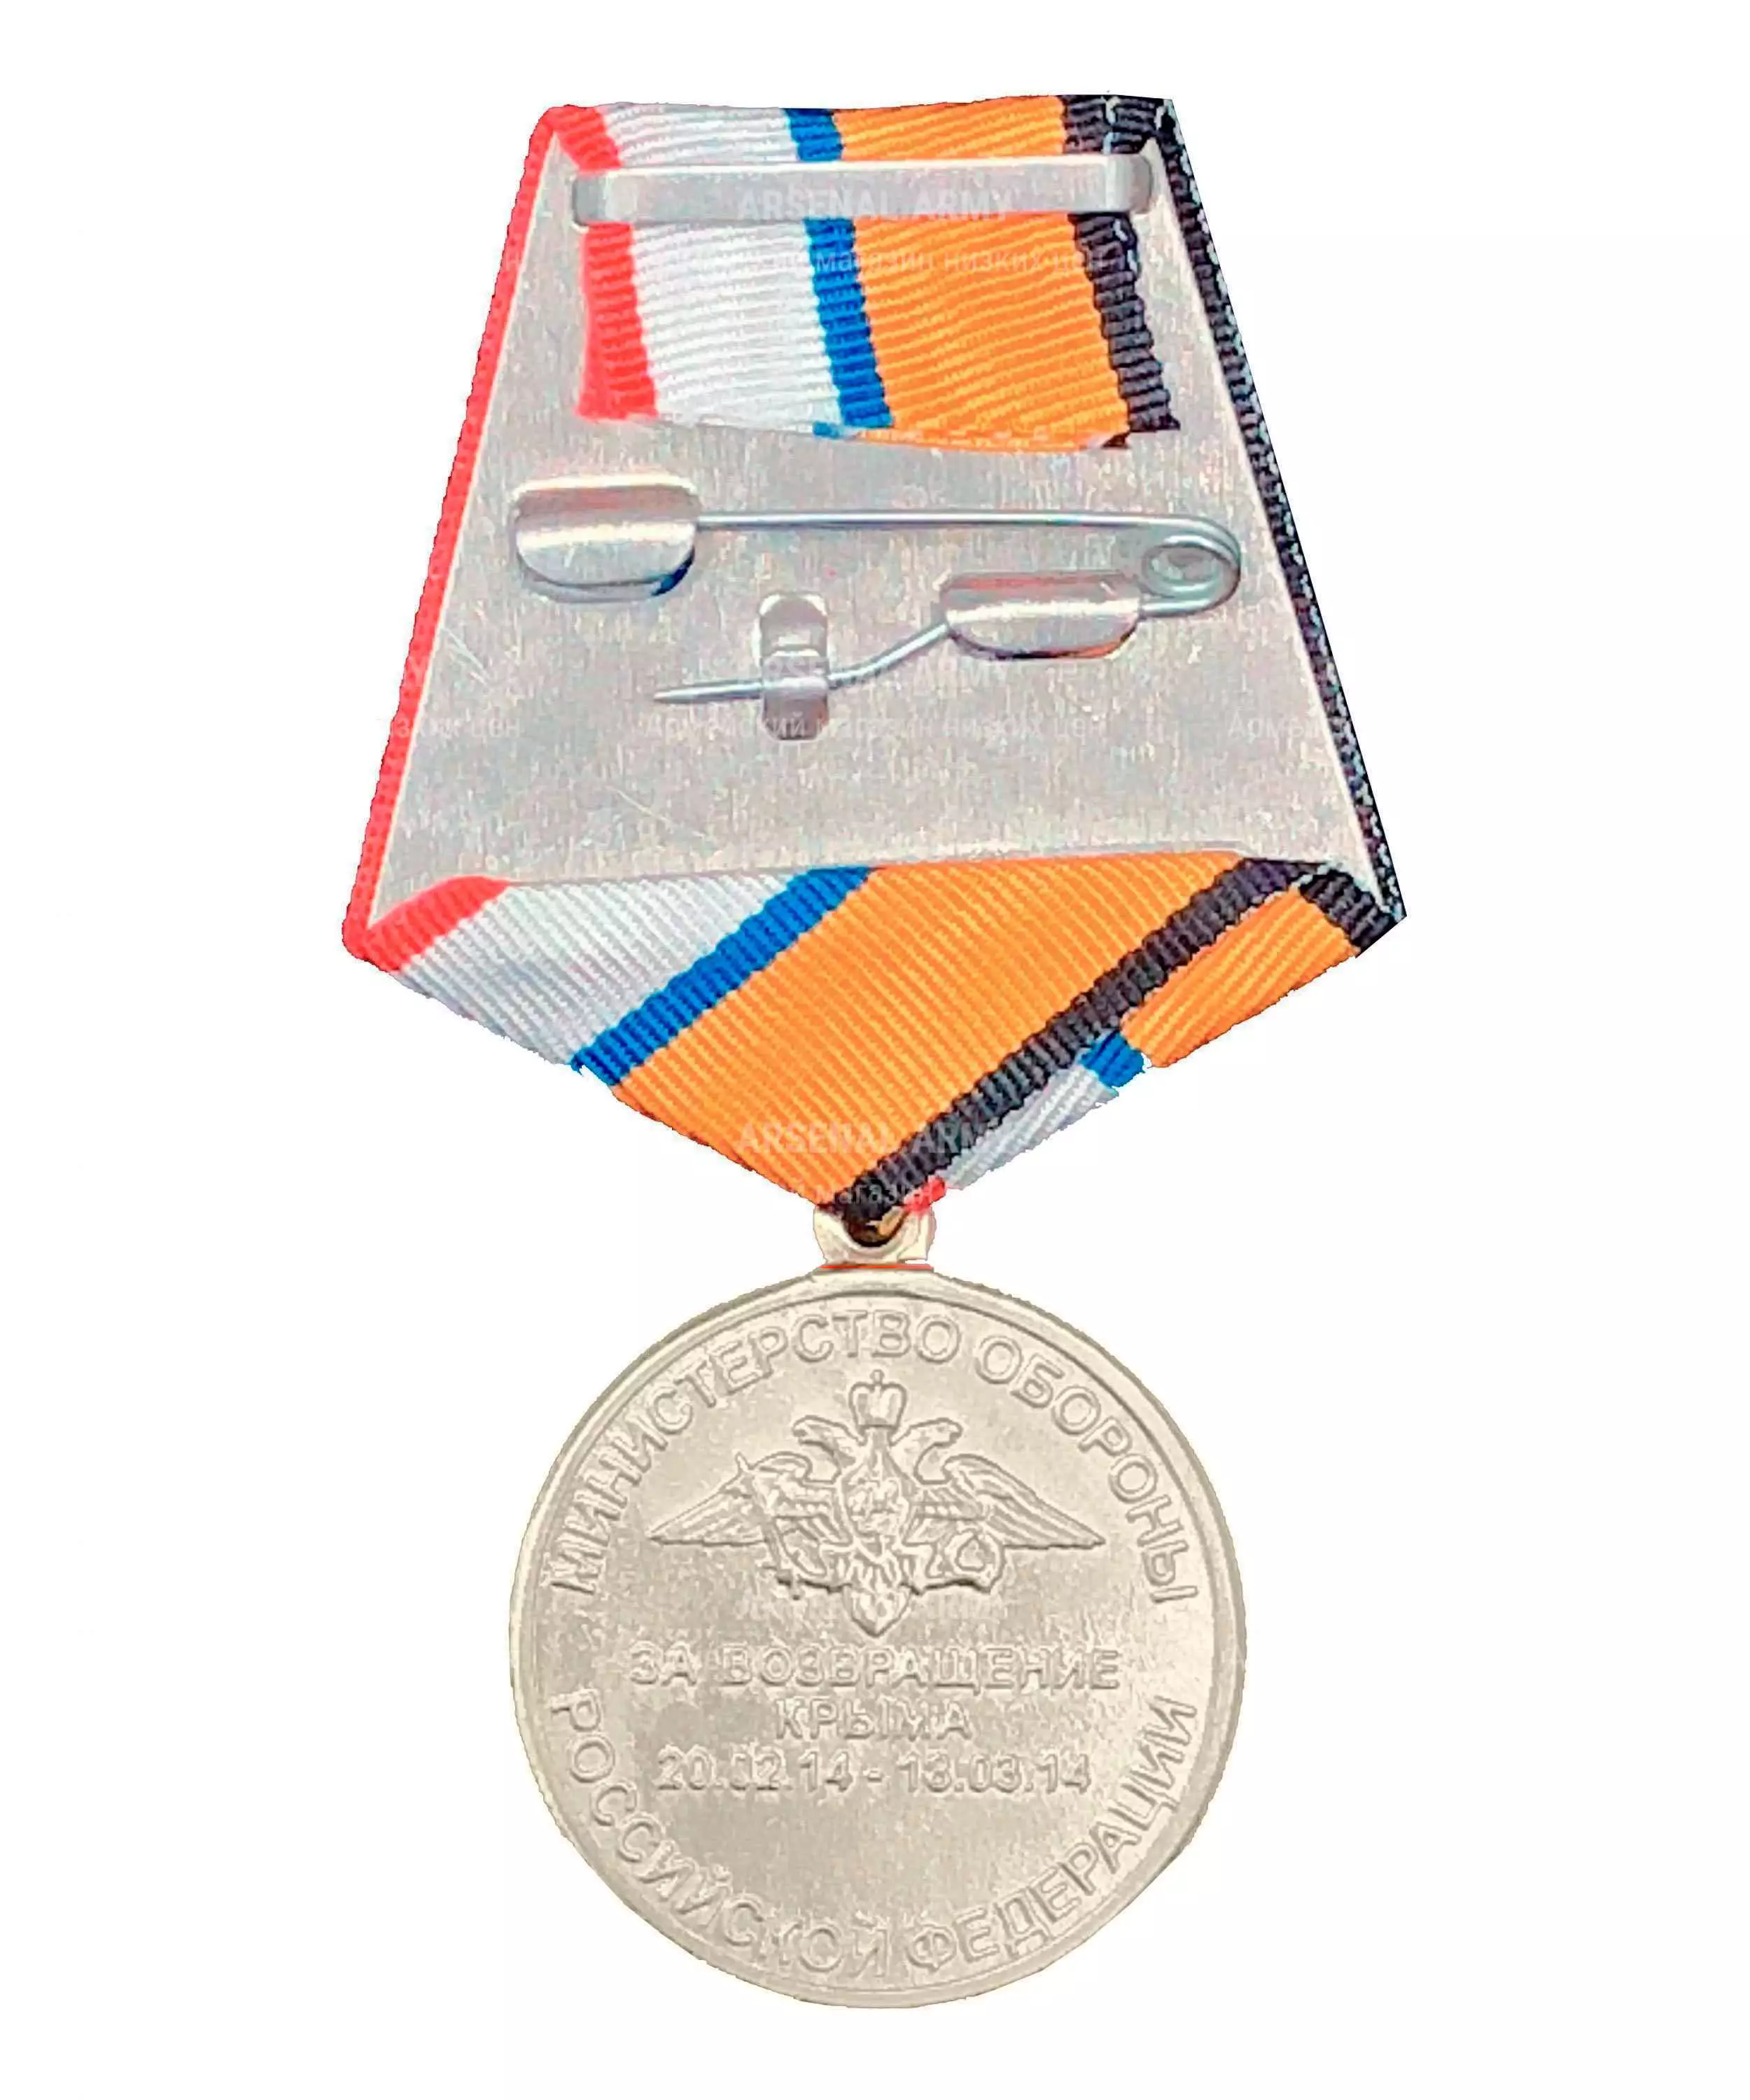 Медаль МО "За возвращение Крыма" — 2